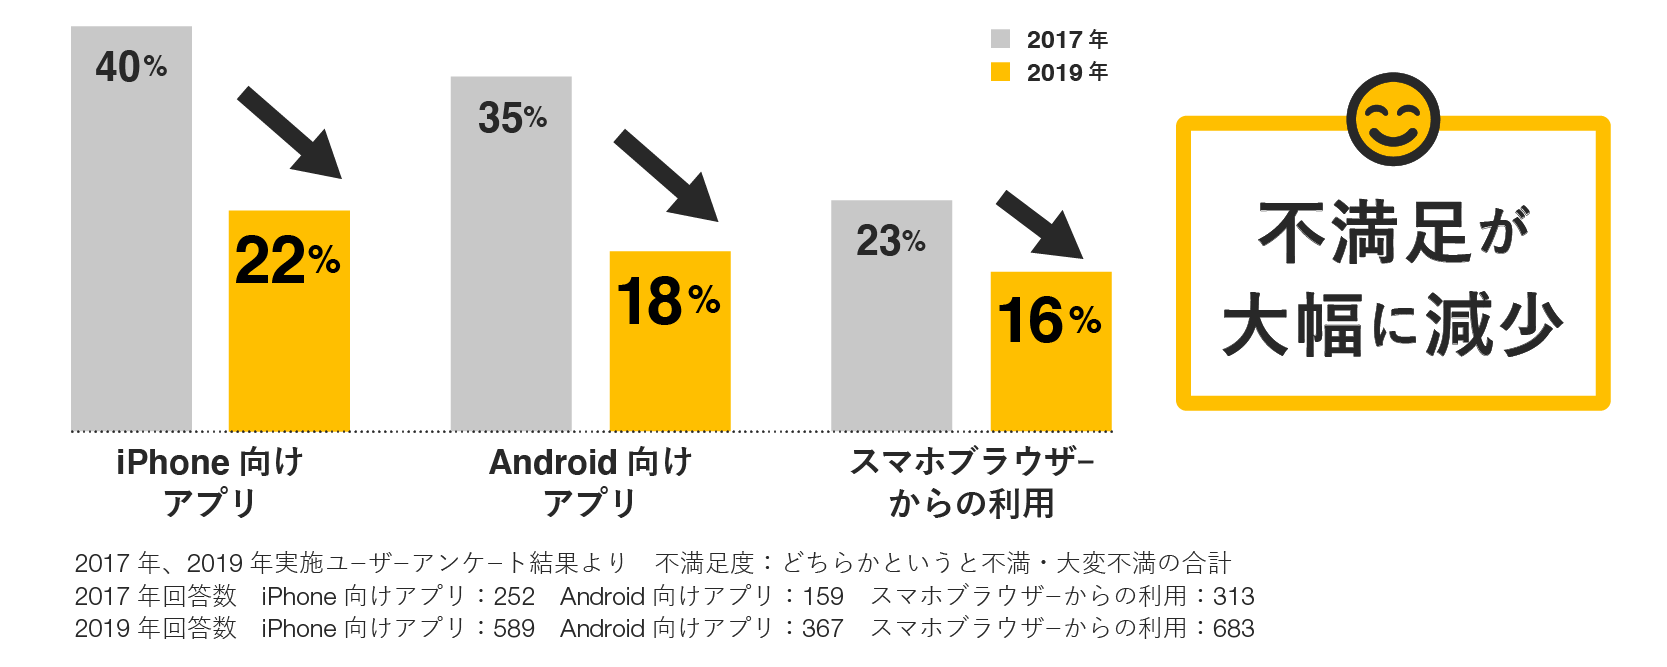 不満足度が大幅に減少。iPhone向けアプリ、40%から22%に減少。Android向けアプリ、35%から18%に減少。スマホブラウザーからの利用、23%から16%に減少。